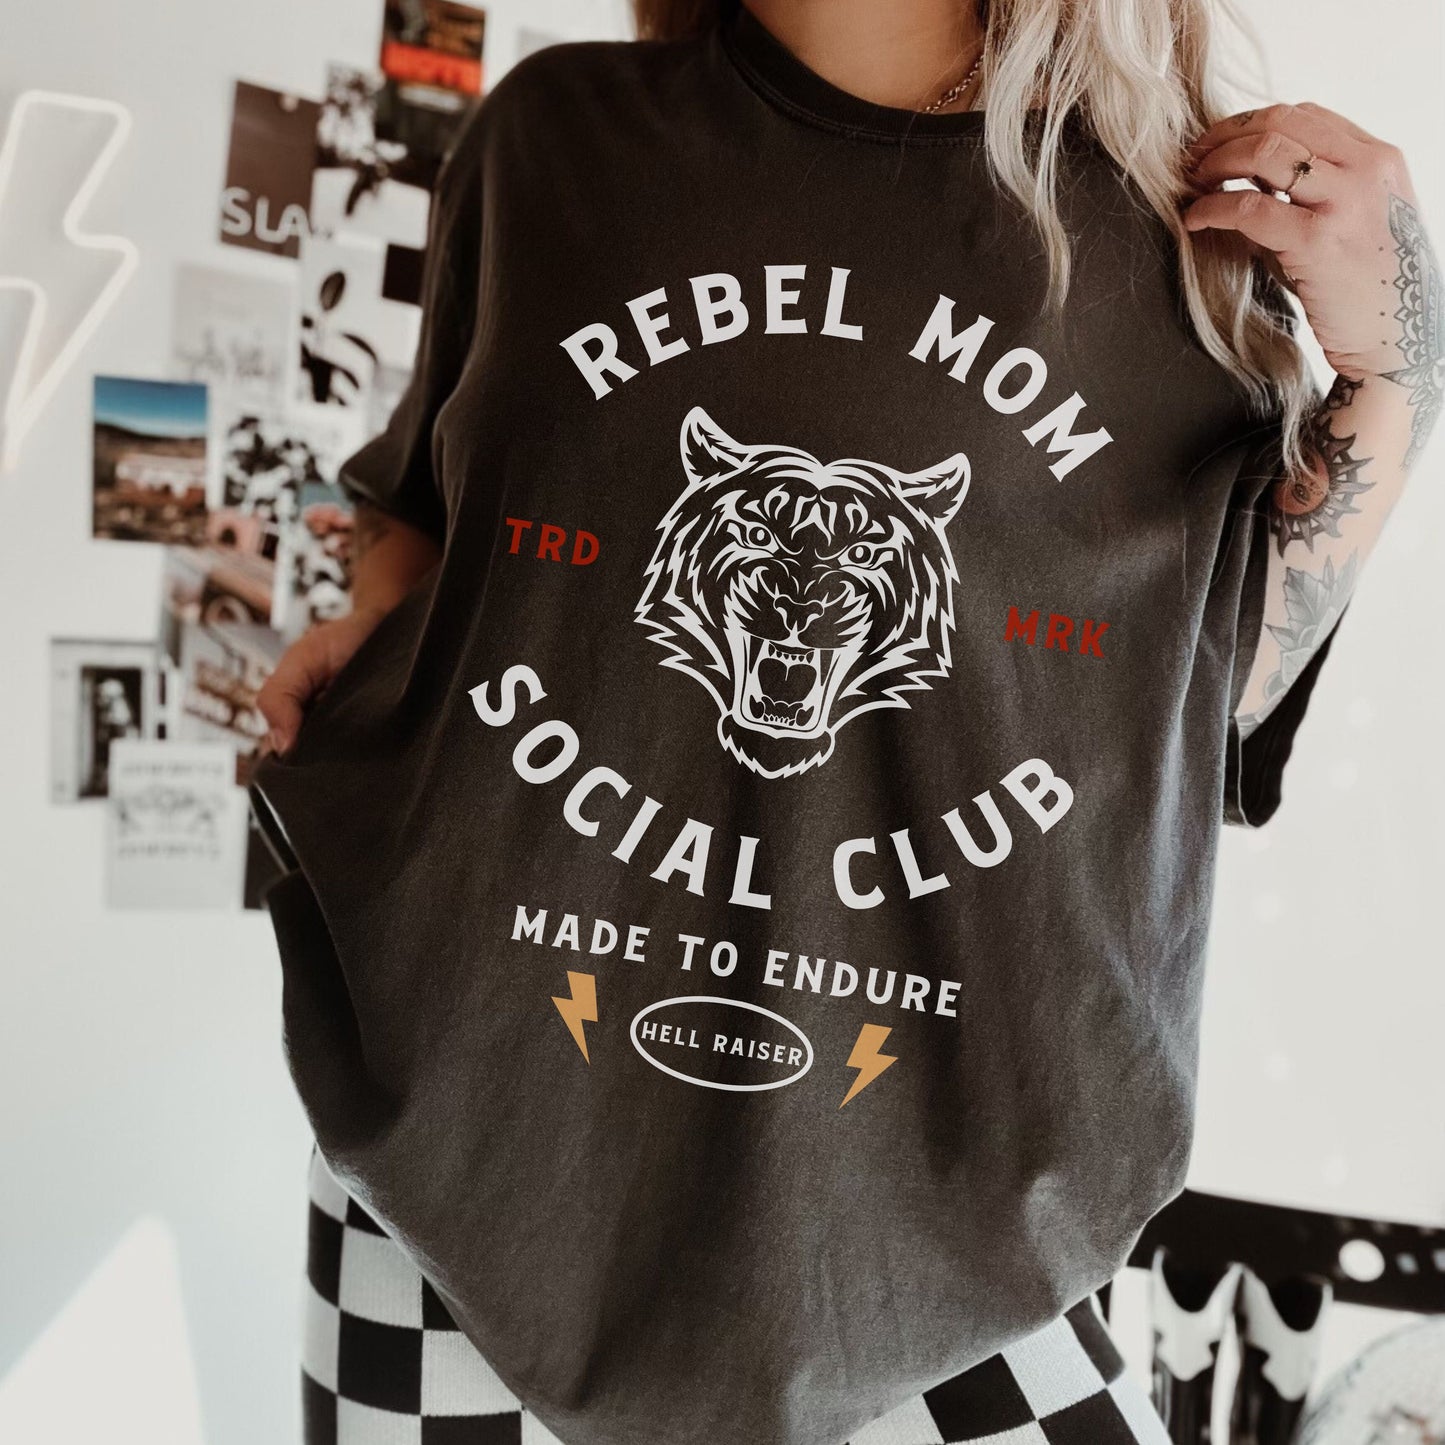 Rebel Mom Social Club | Comfort Tee - Coco & Rho